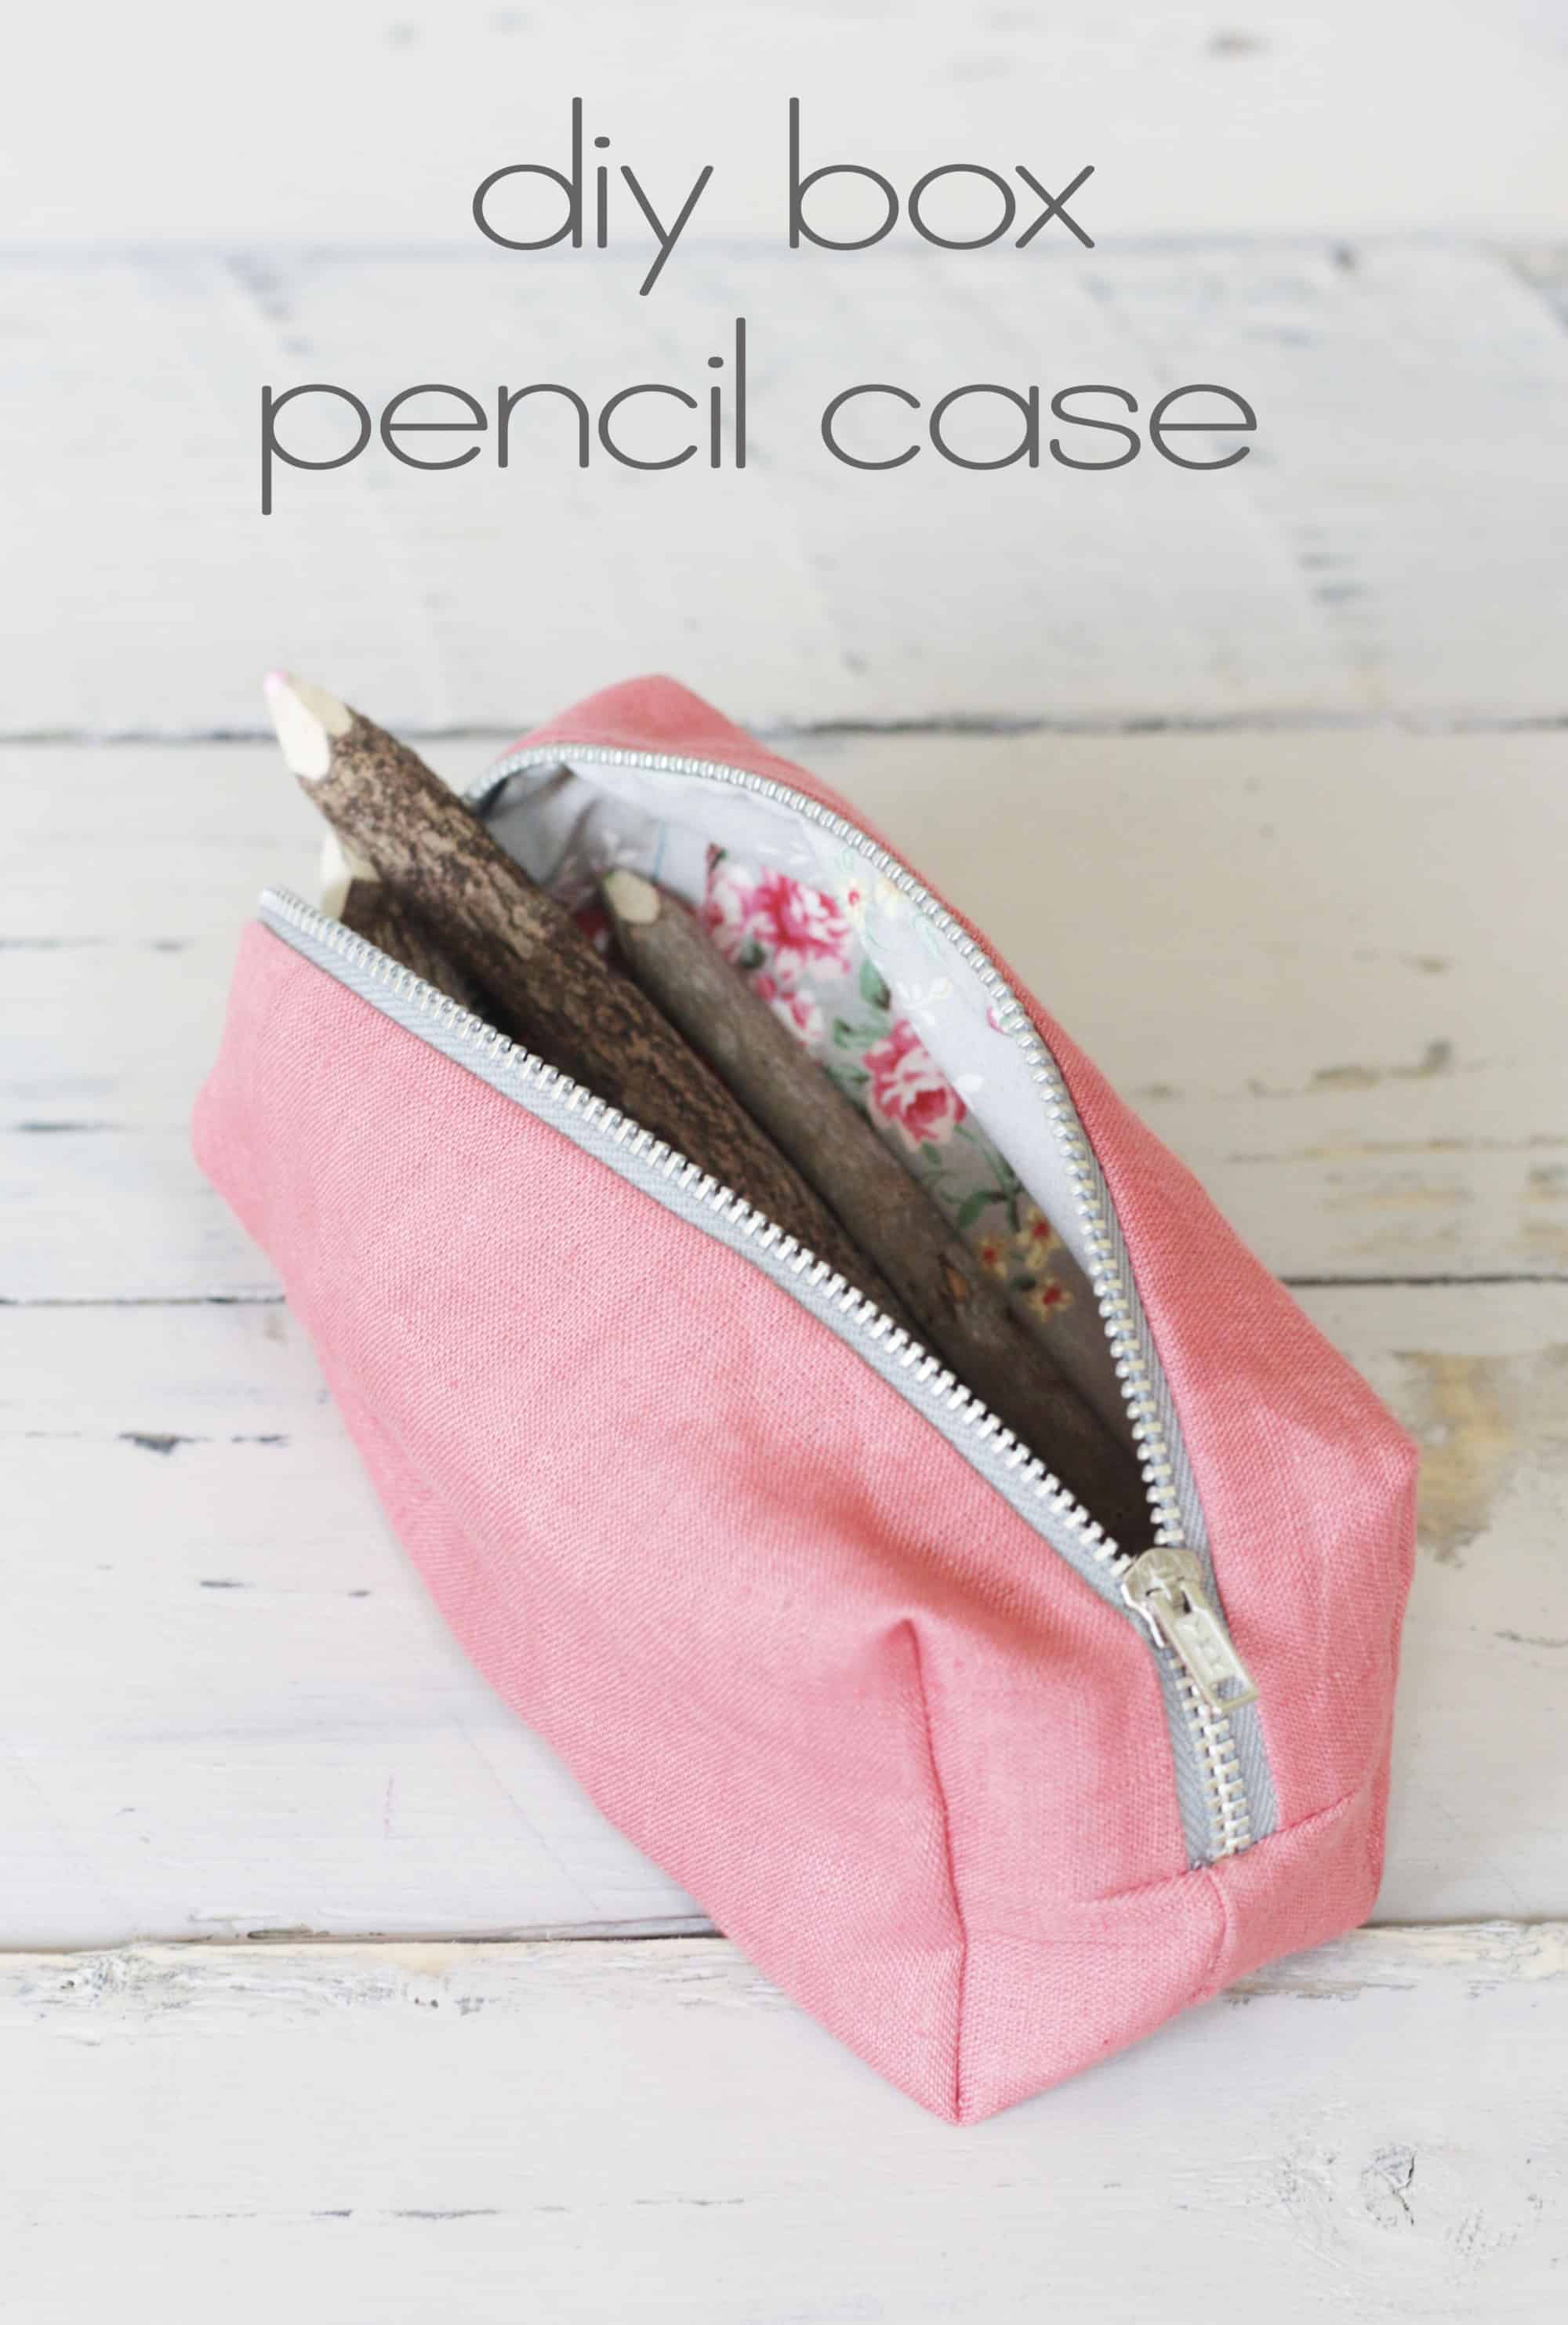 DIY box style pencil case